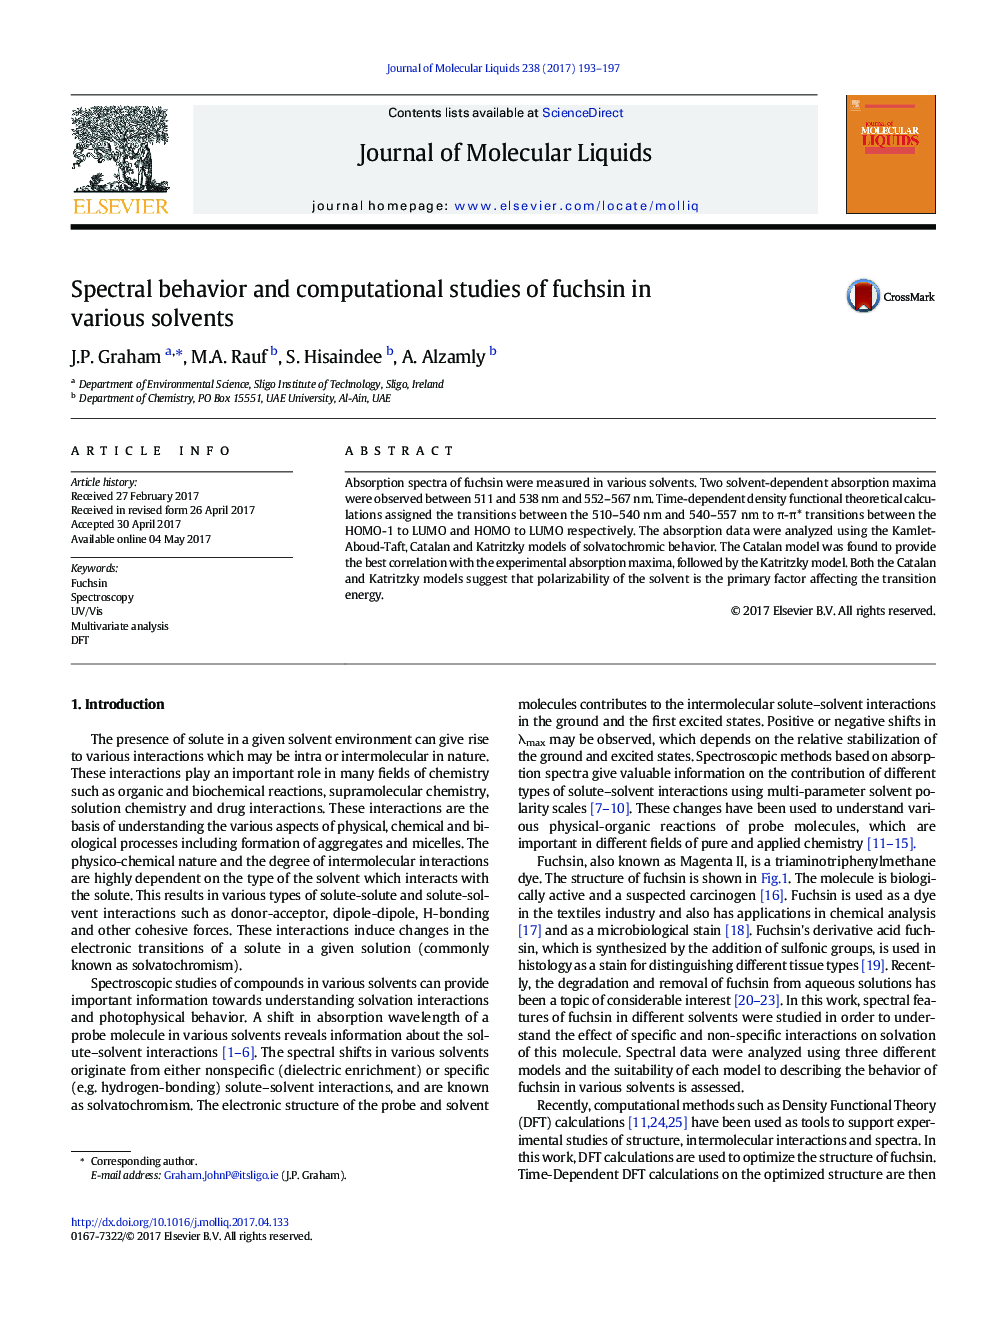 رفتار طیفی و مطالعات محاسباتی فوکسین در حلال های مختلف 